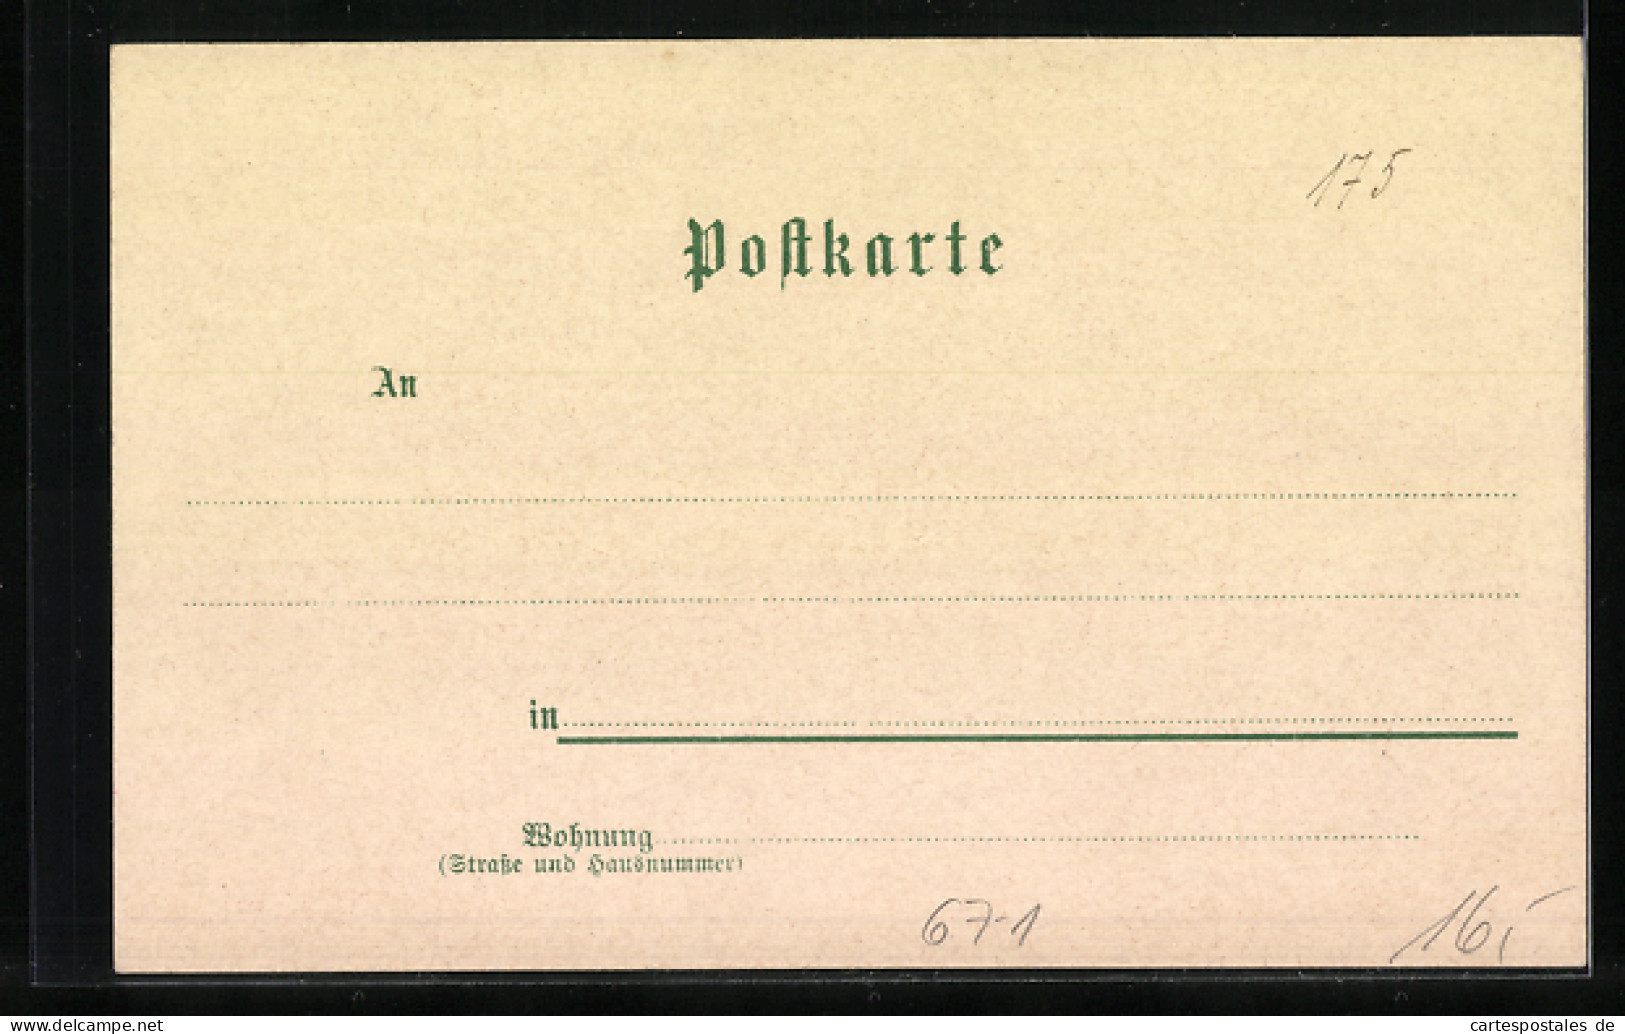 Lithographie Heilbronn, Industrie-Gewerbe- U. Kunst-Ausstellung 1897  - Expositions